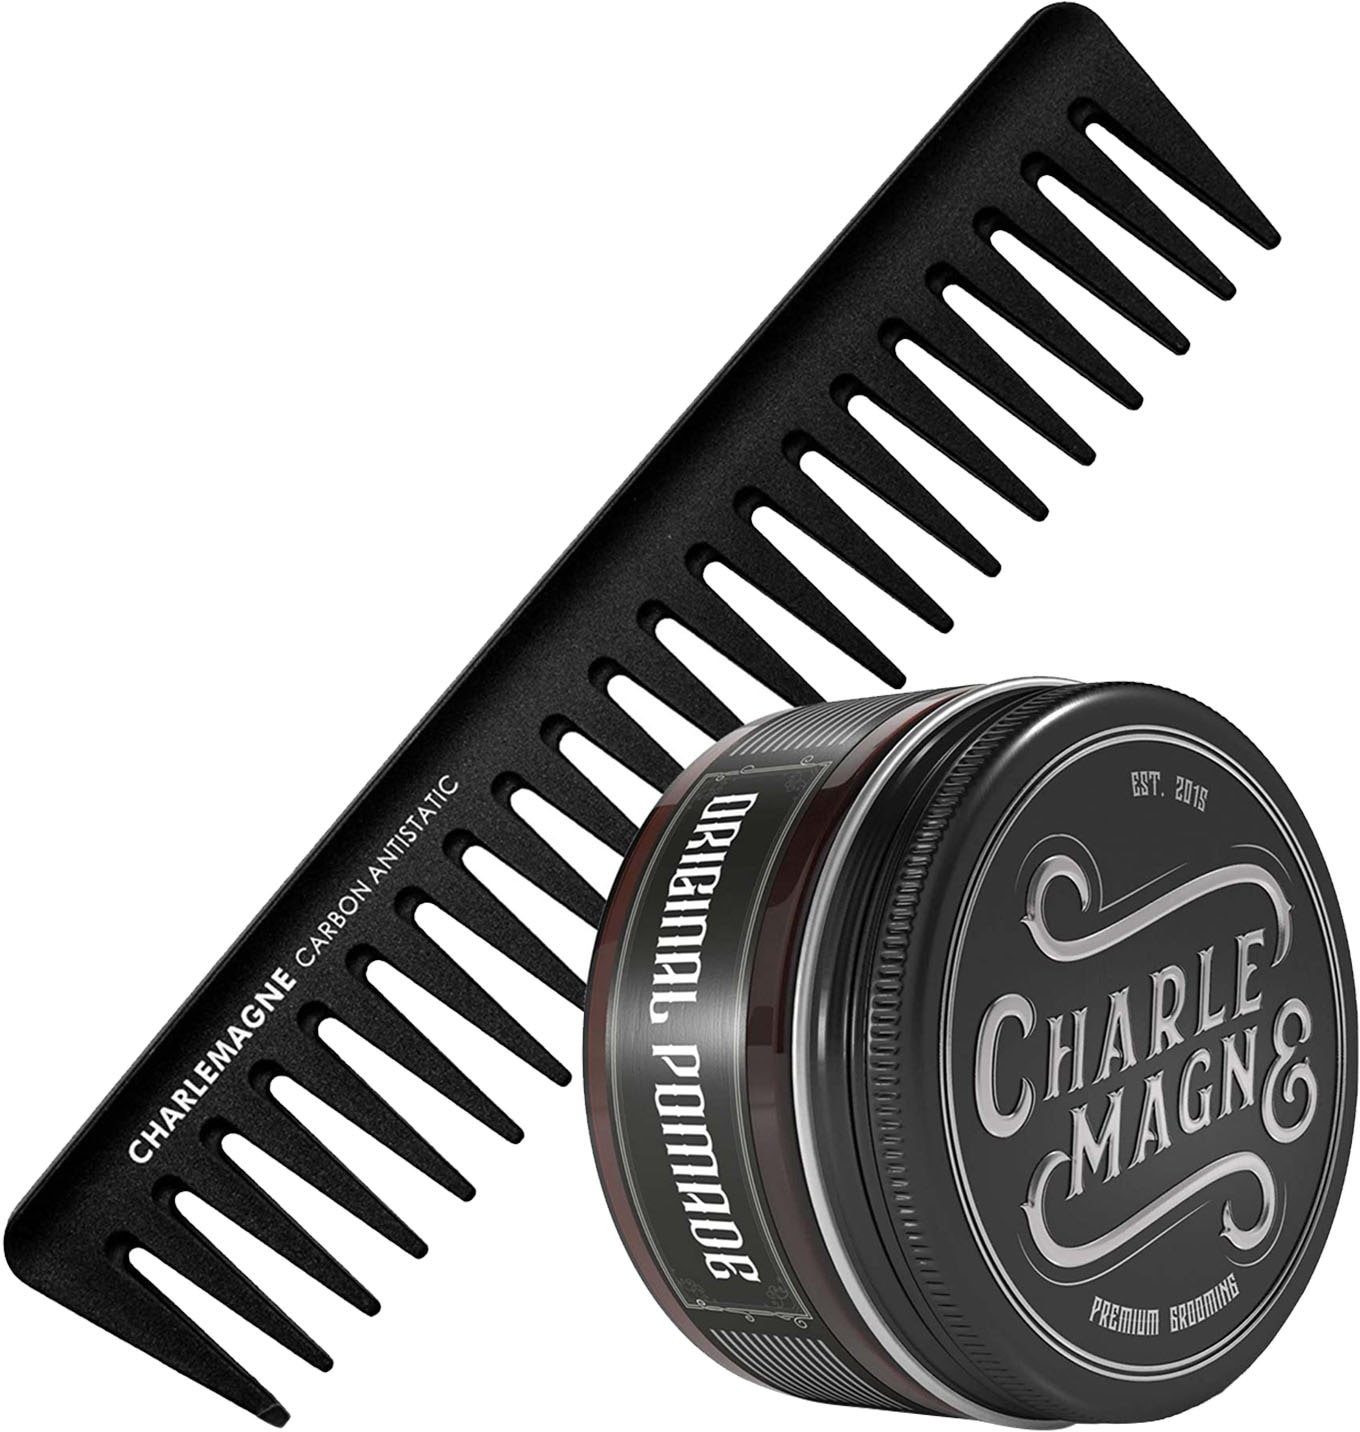 CHARLEMAGNE Haarpflege-Set »The OG's Essentials«, (2 tlg.) kaufen